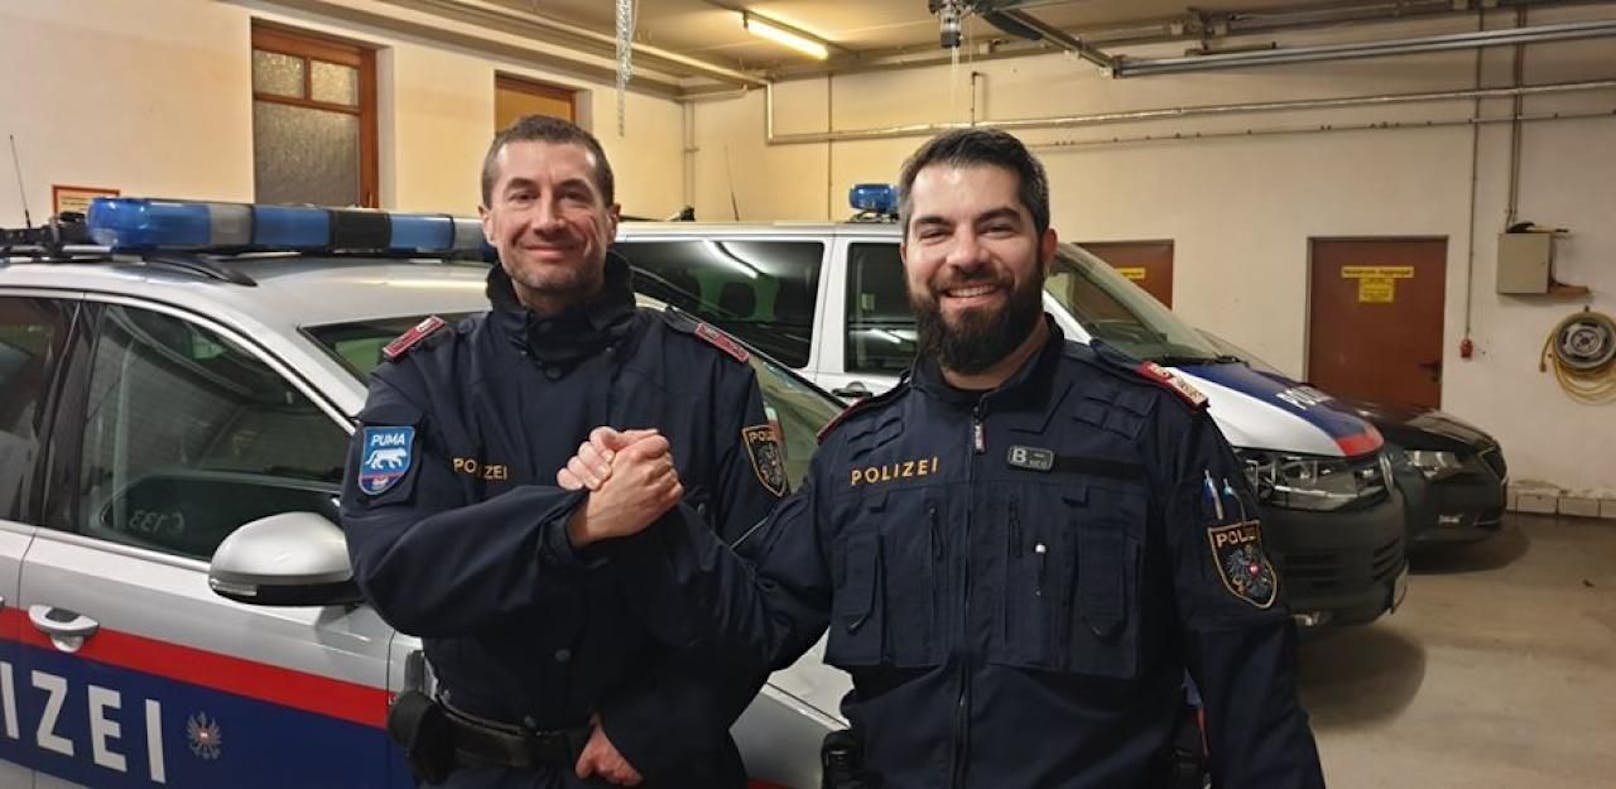 Zwei Polizisten retten Unfallopfer vor Erfrieren